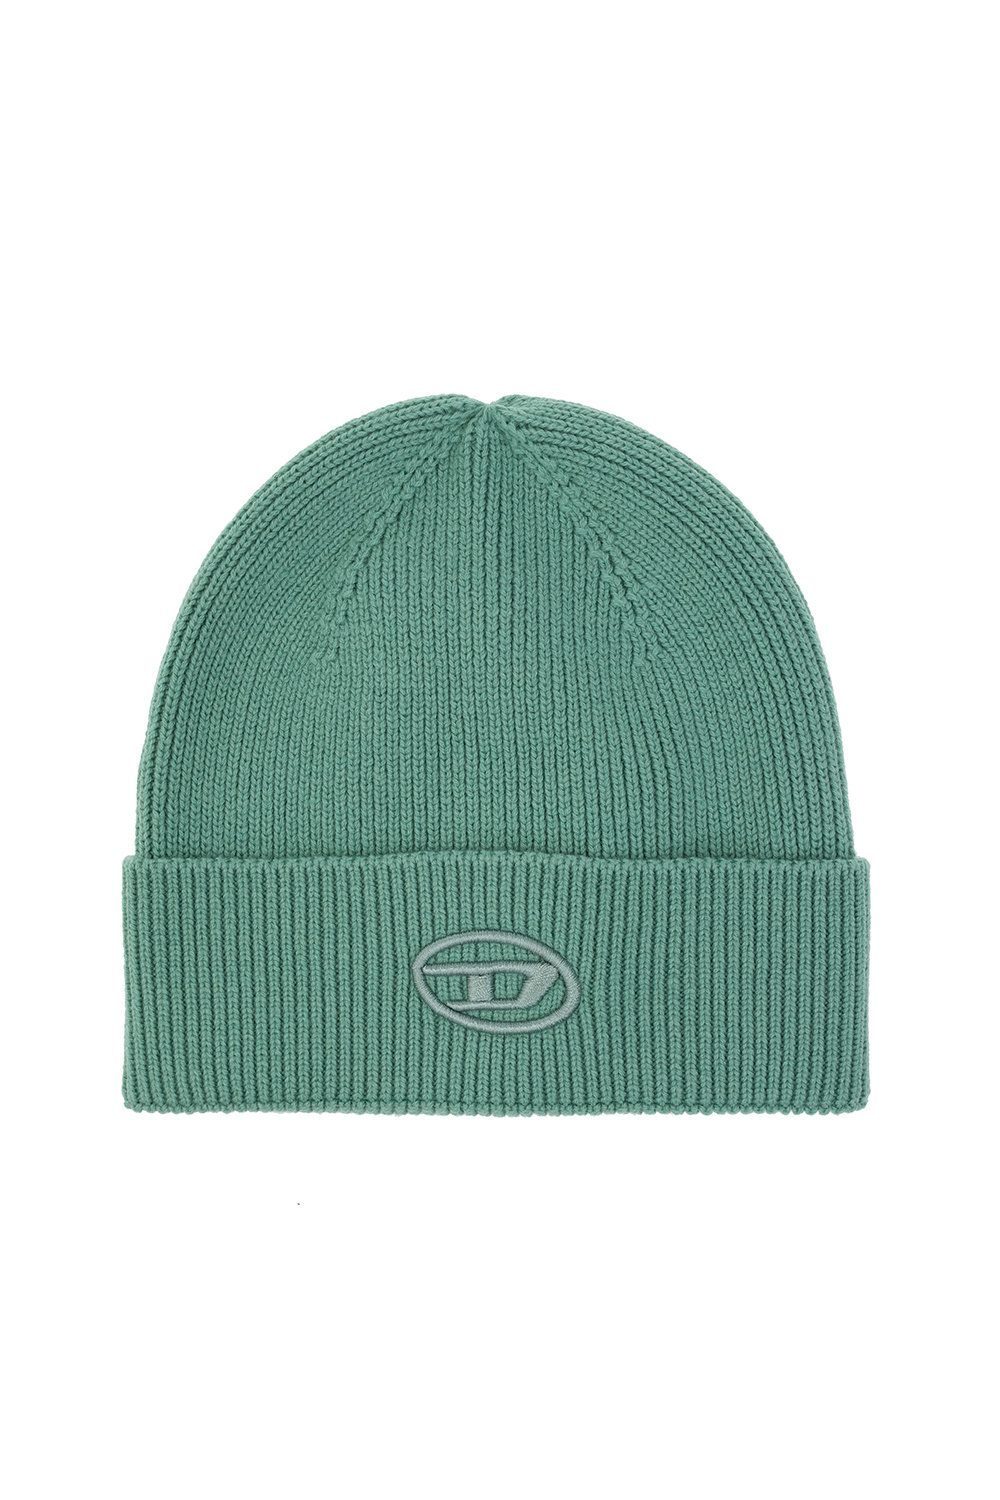 detail - | stitching | hat - patched Accessorie Diesel beanie Logo IetpShops Men\'s